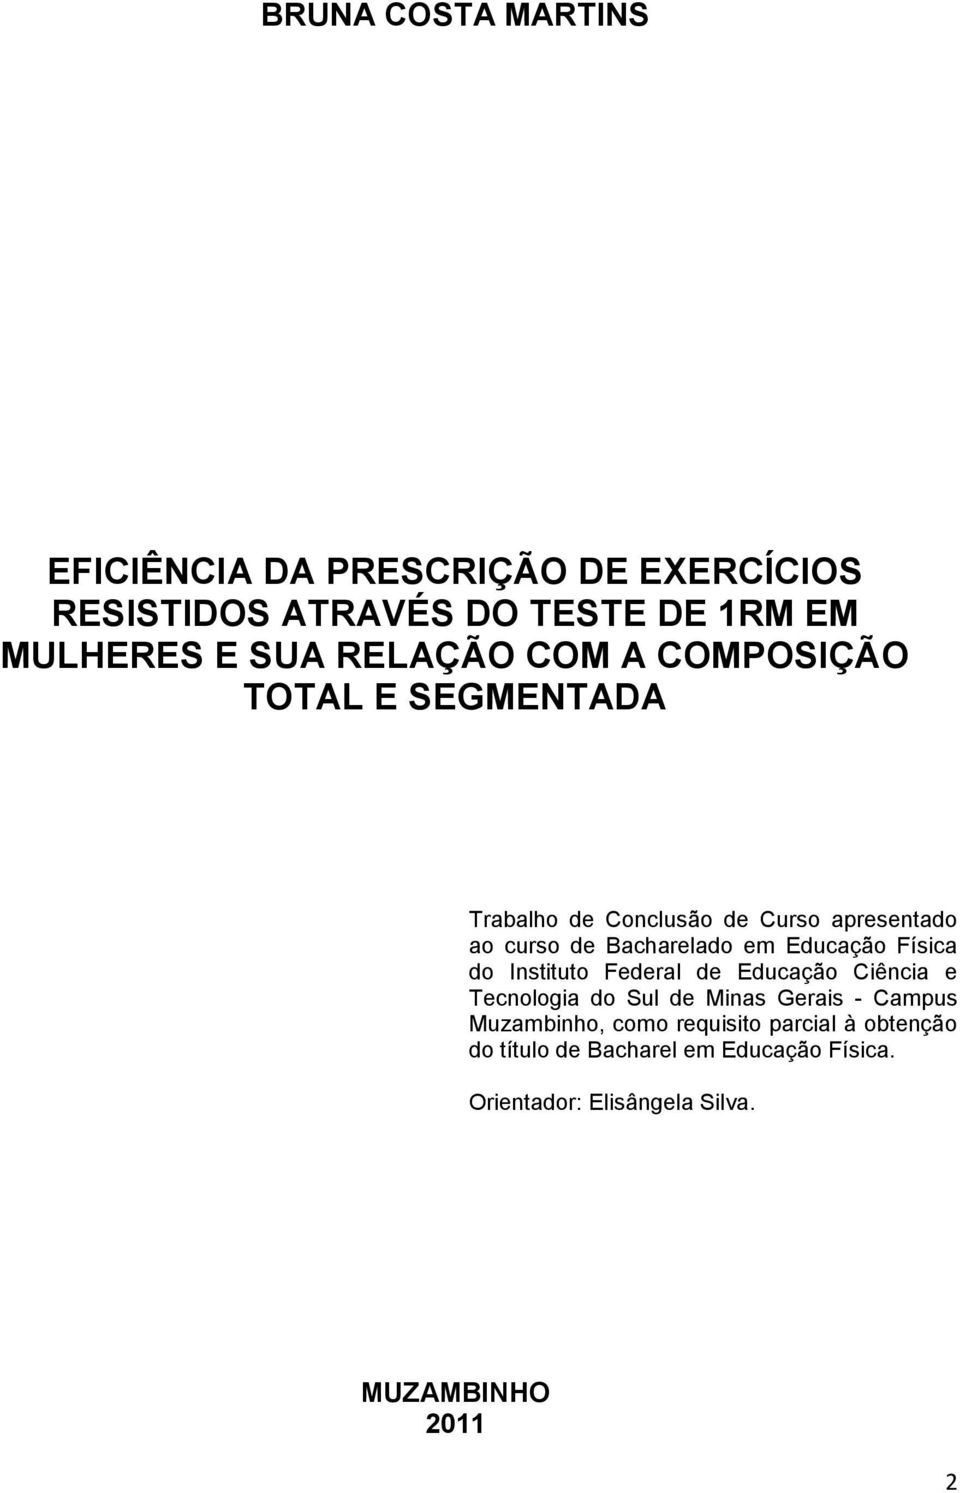 Educação Física do Instituto Federal de Educação Ciência e Tecnologia do Sul de Minas Gerais - Campus Muzambinho,